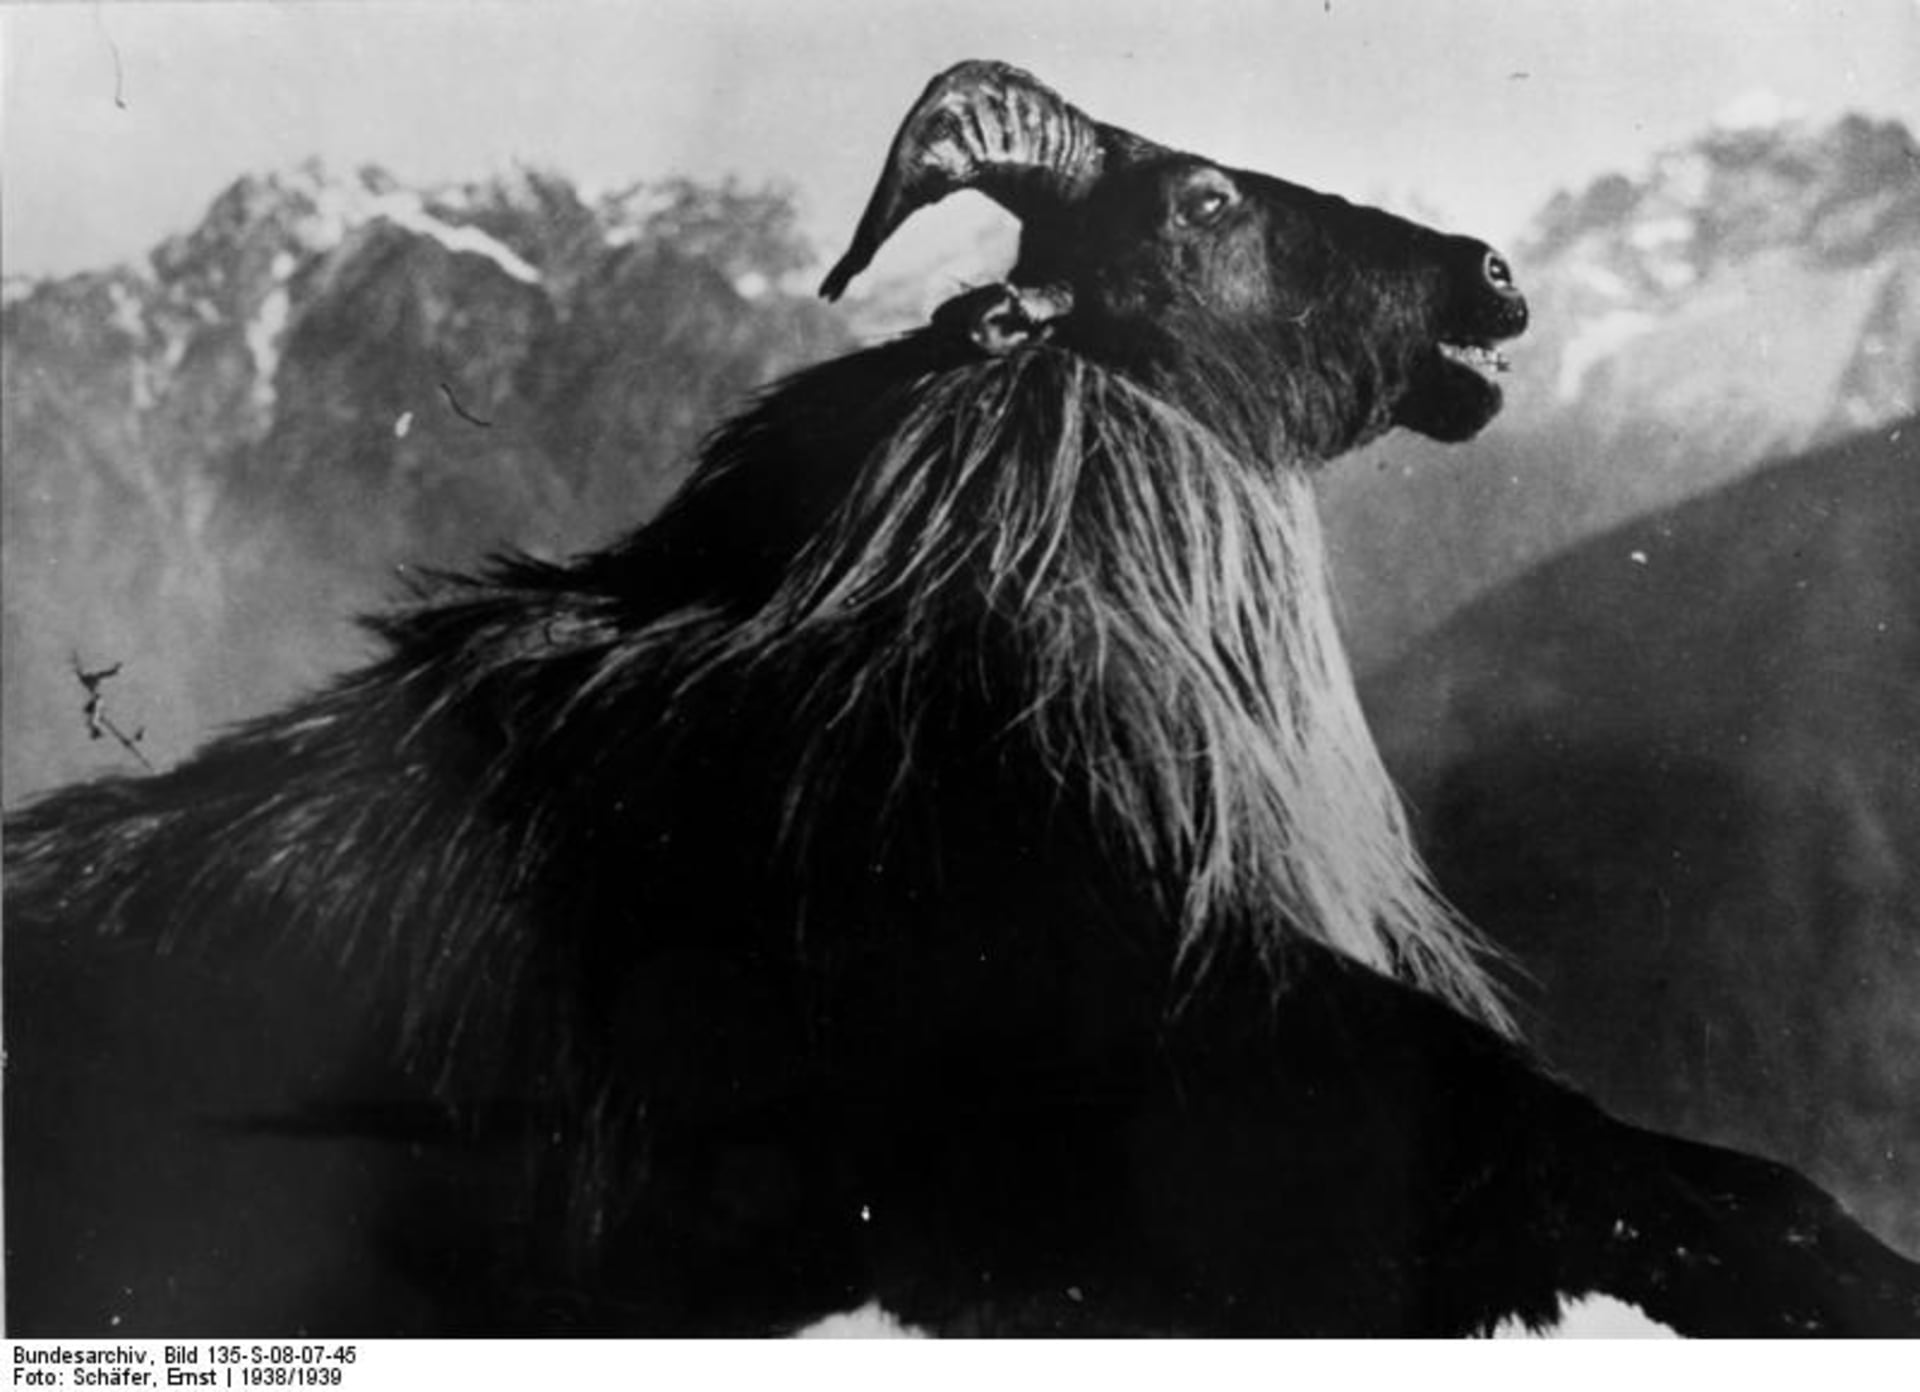 Snímky z Tibetské expedice Ernsta Schäfera – vycpanina uloveného zvířete